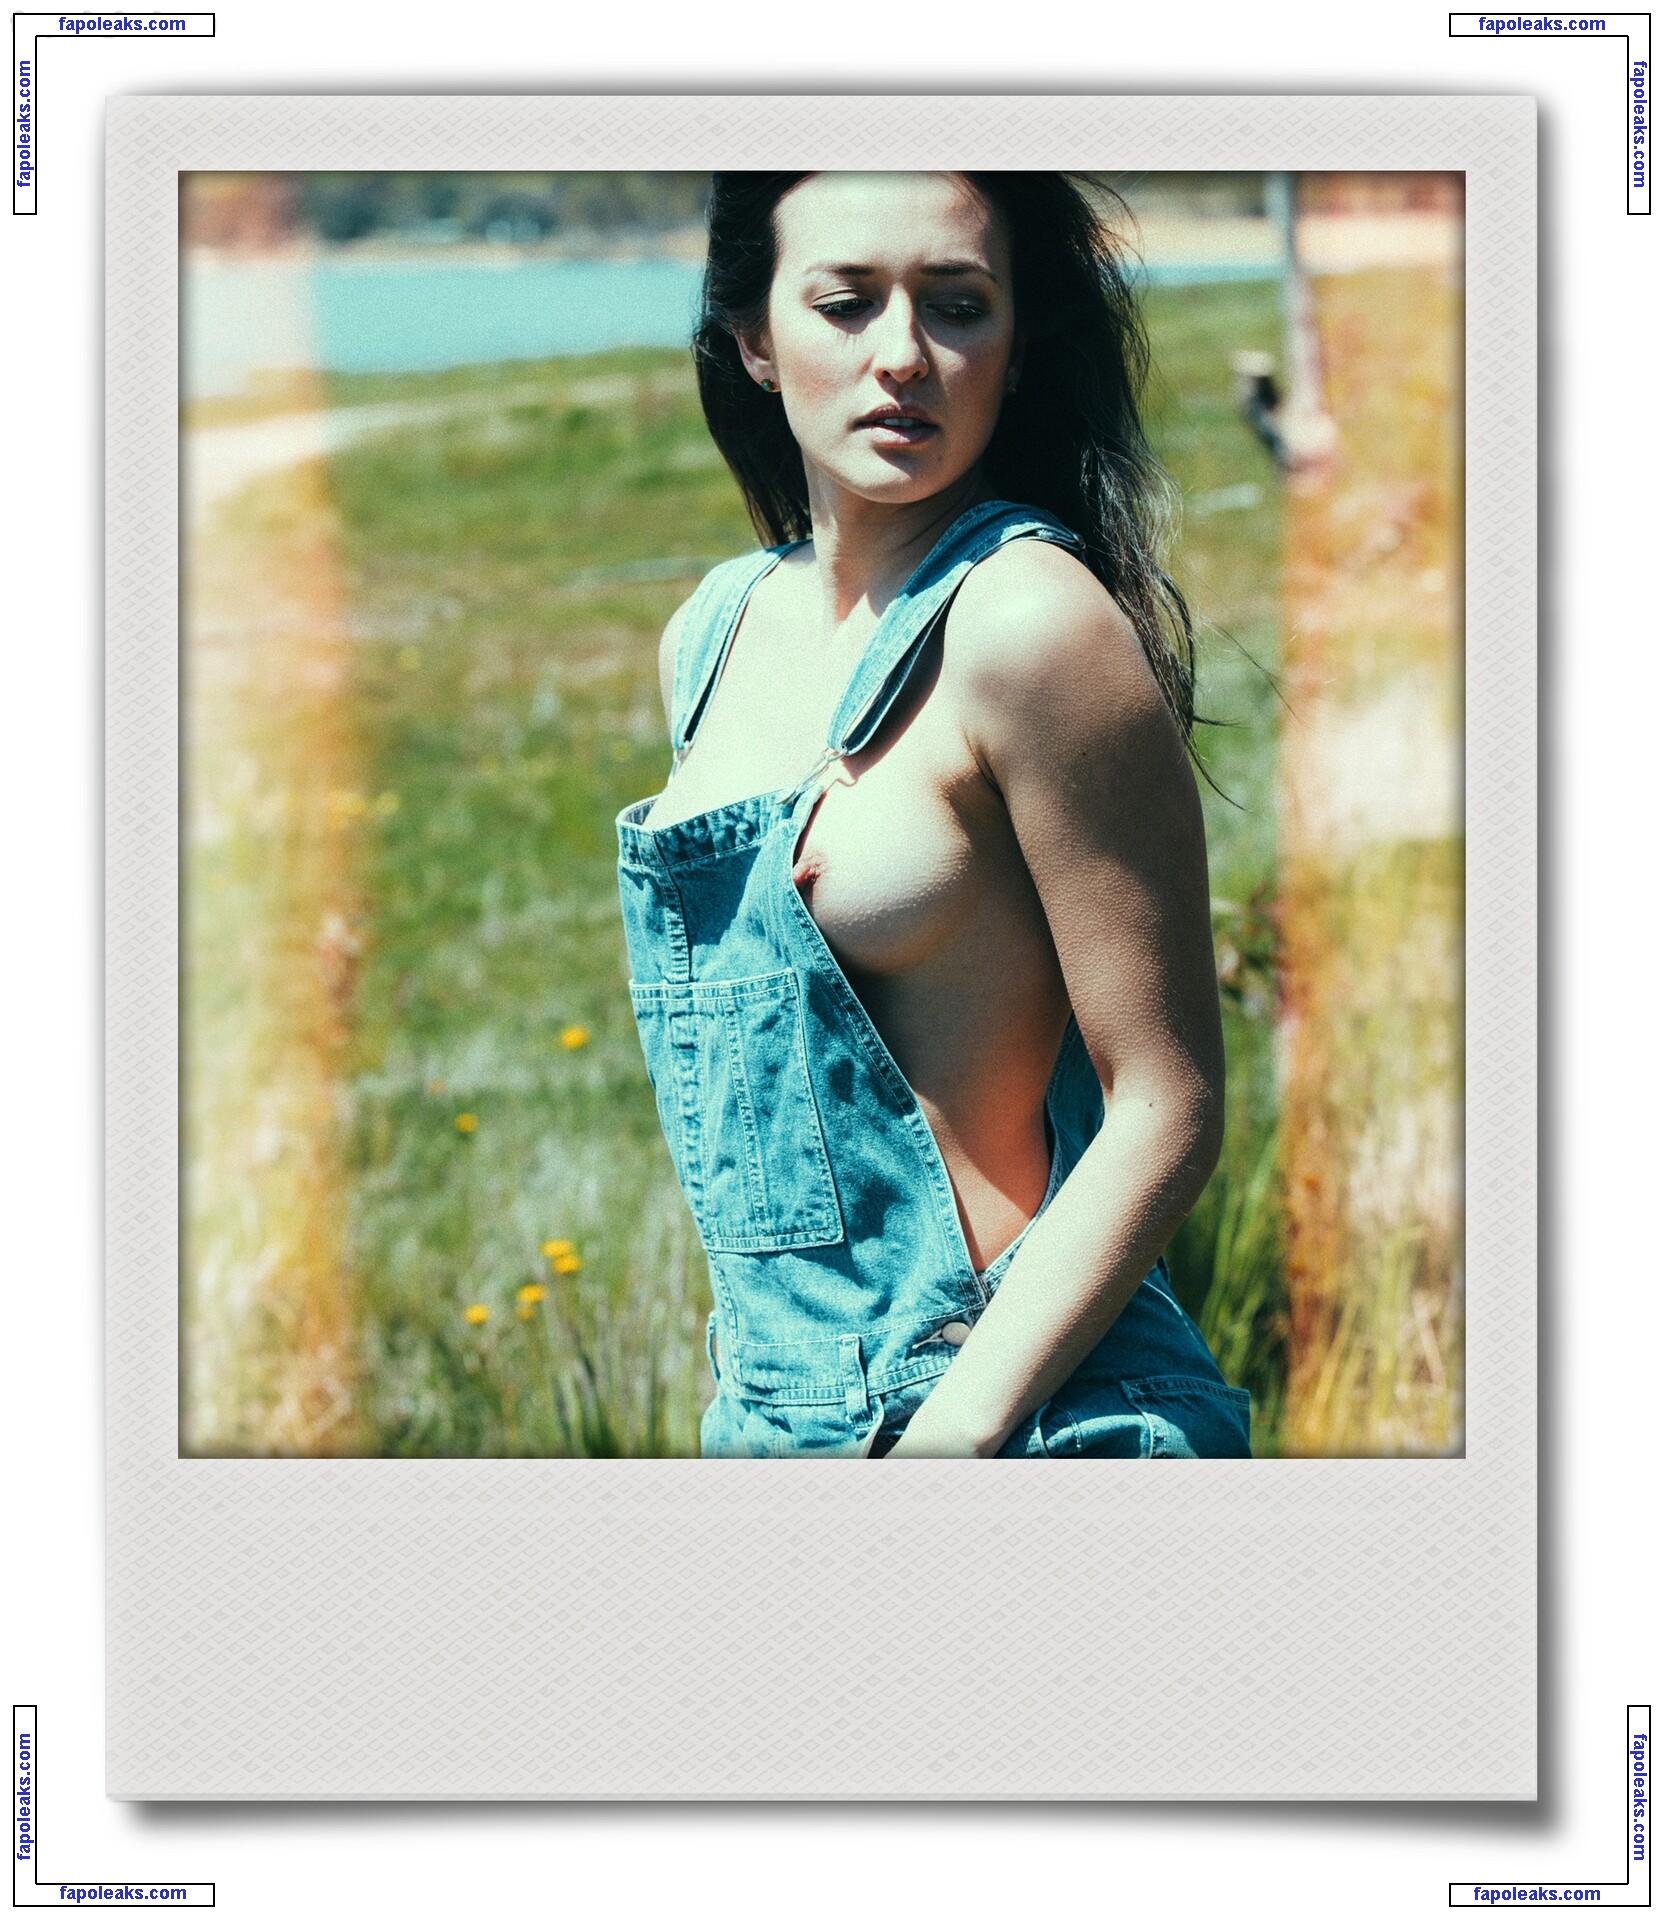 Melissa Mai / _melissa_mai nude photo #0016 from OnlyFans